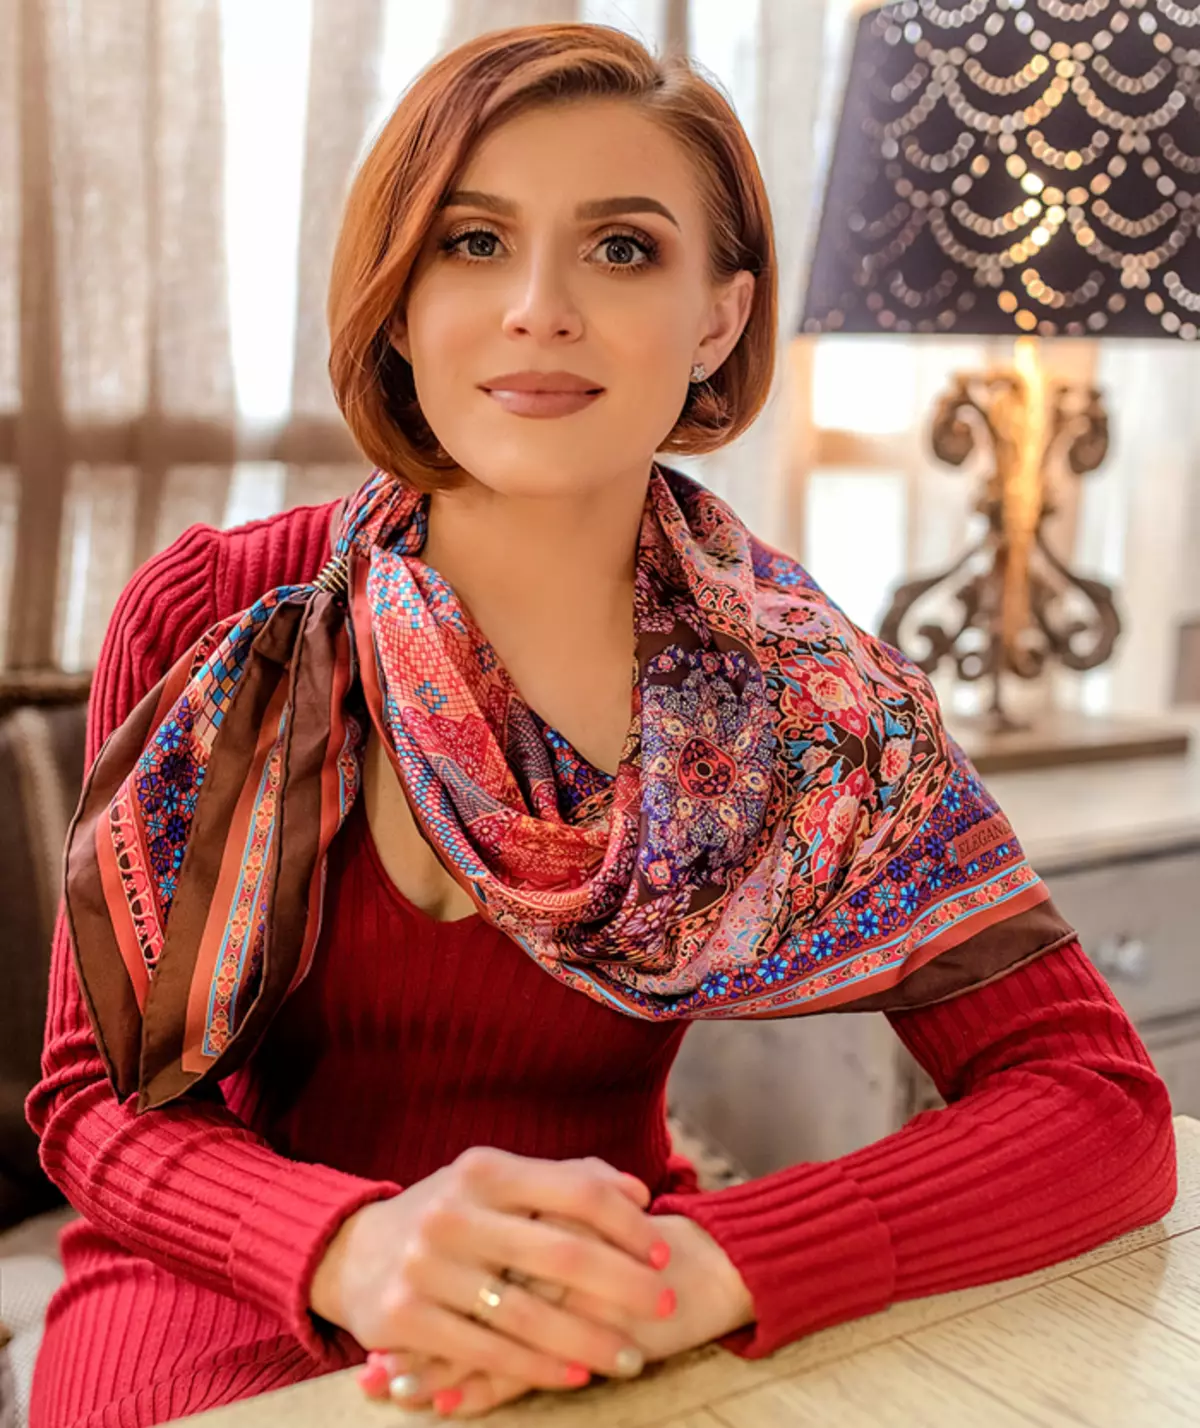 Evgenia Ghaneev